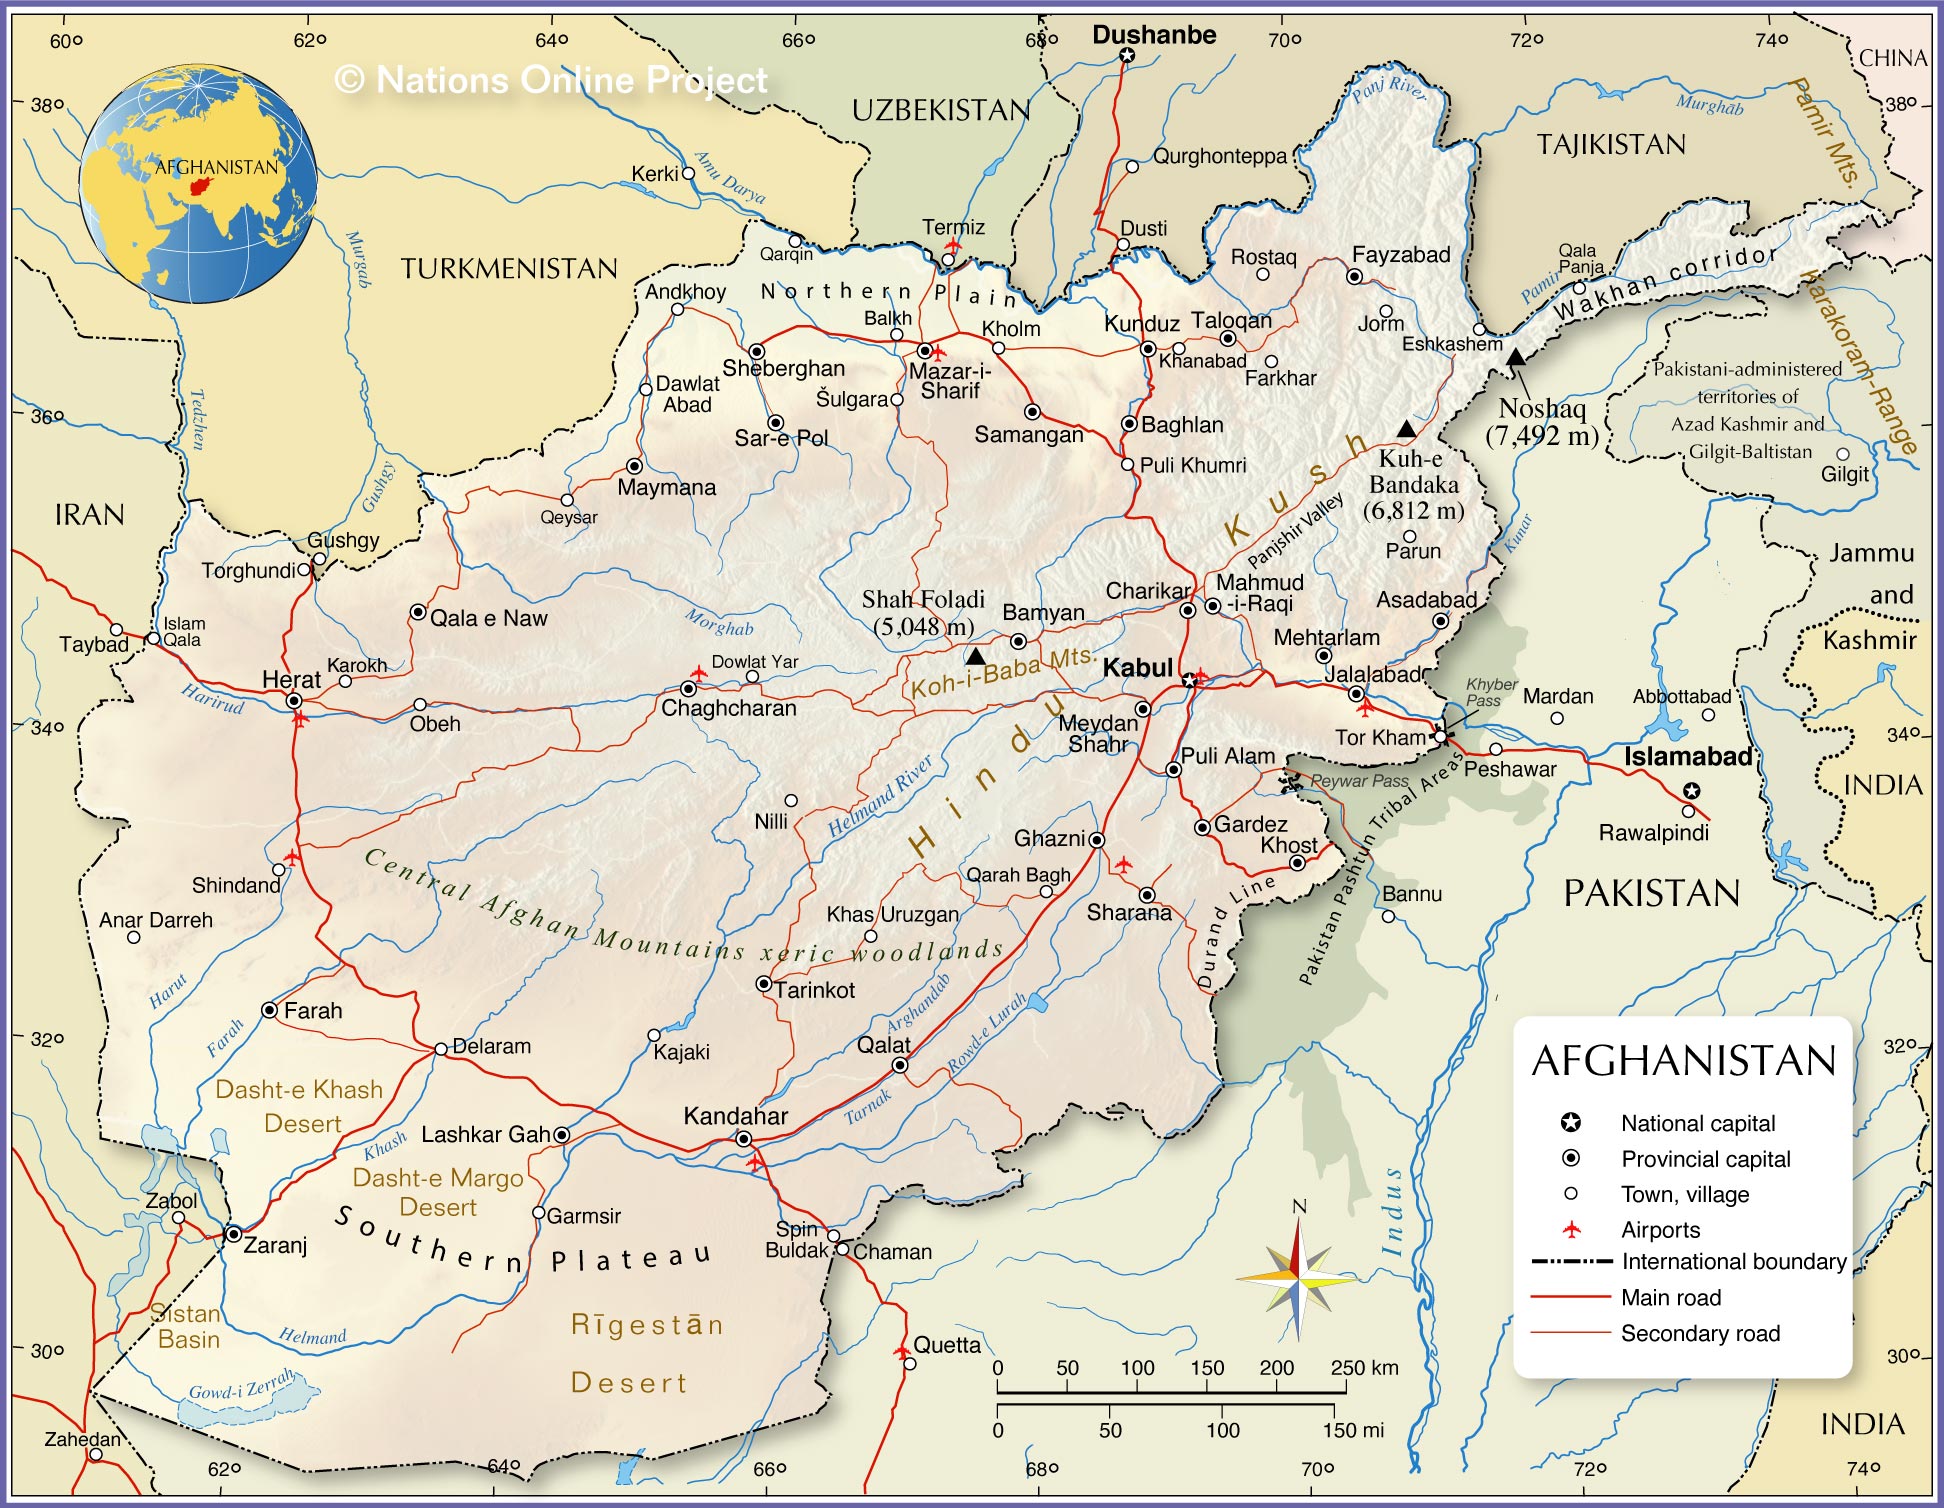 afghanistan kandahar province landscape